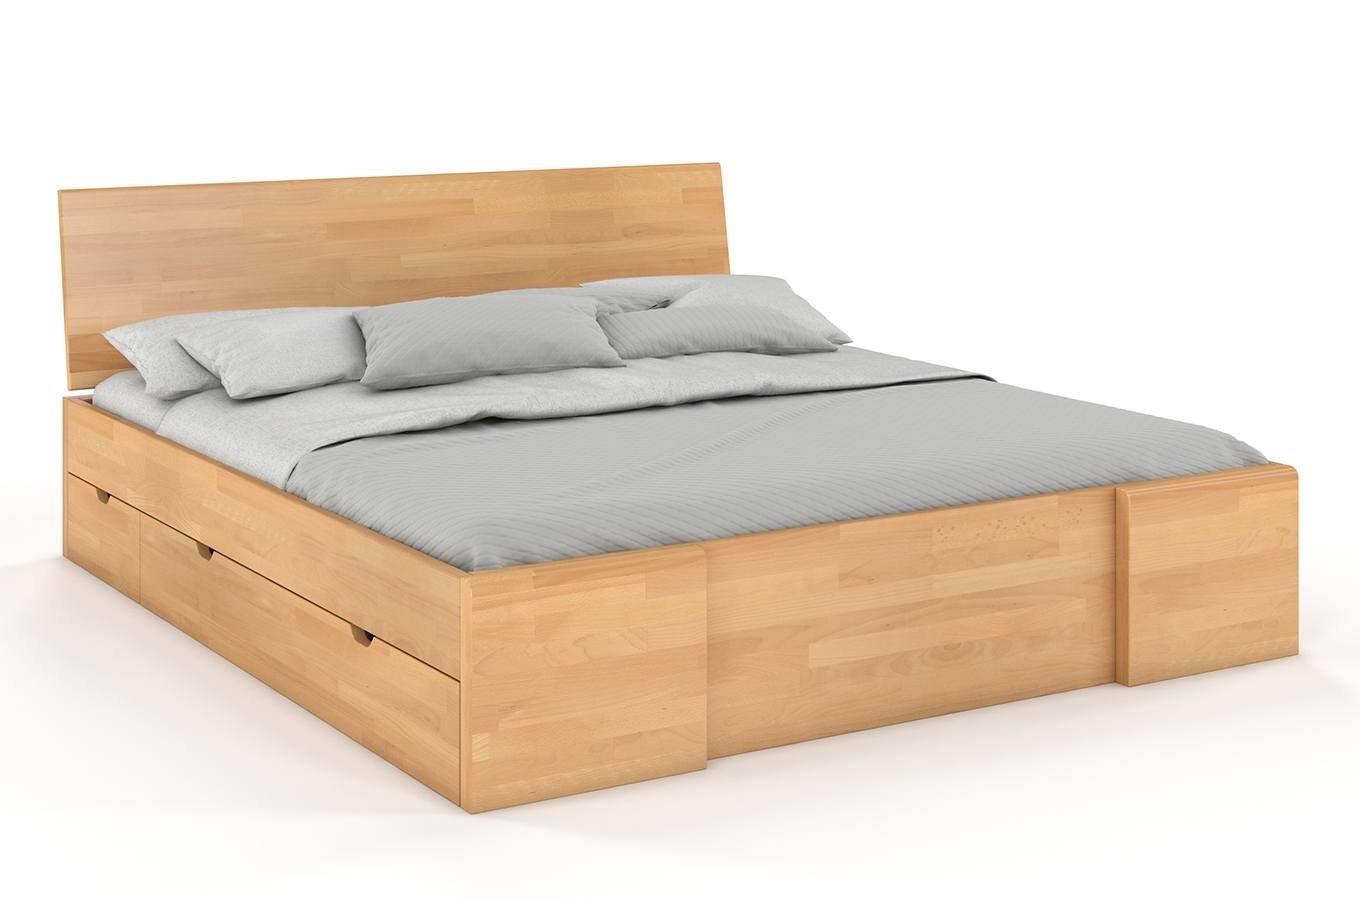 Łóżko drewniane bukowe Visby Hessler High Drawers (z szufladami) / 200x200 cm, kolor naturalny